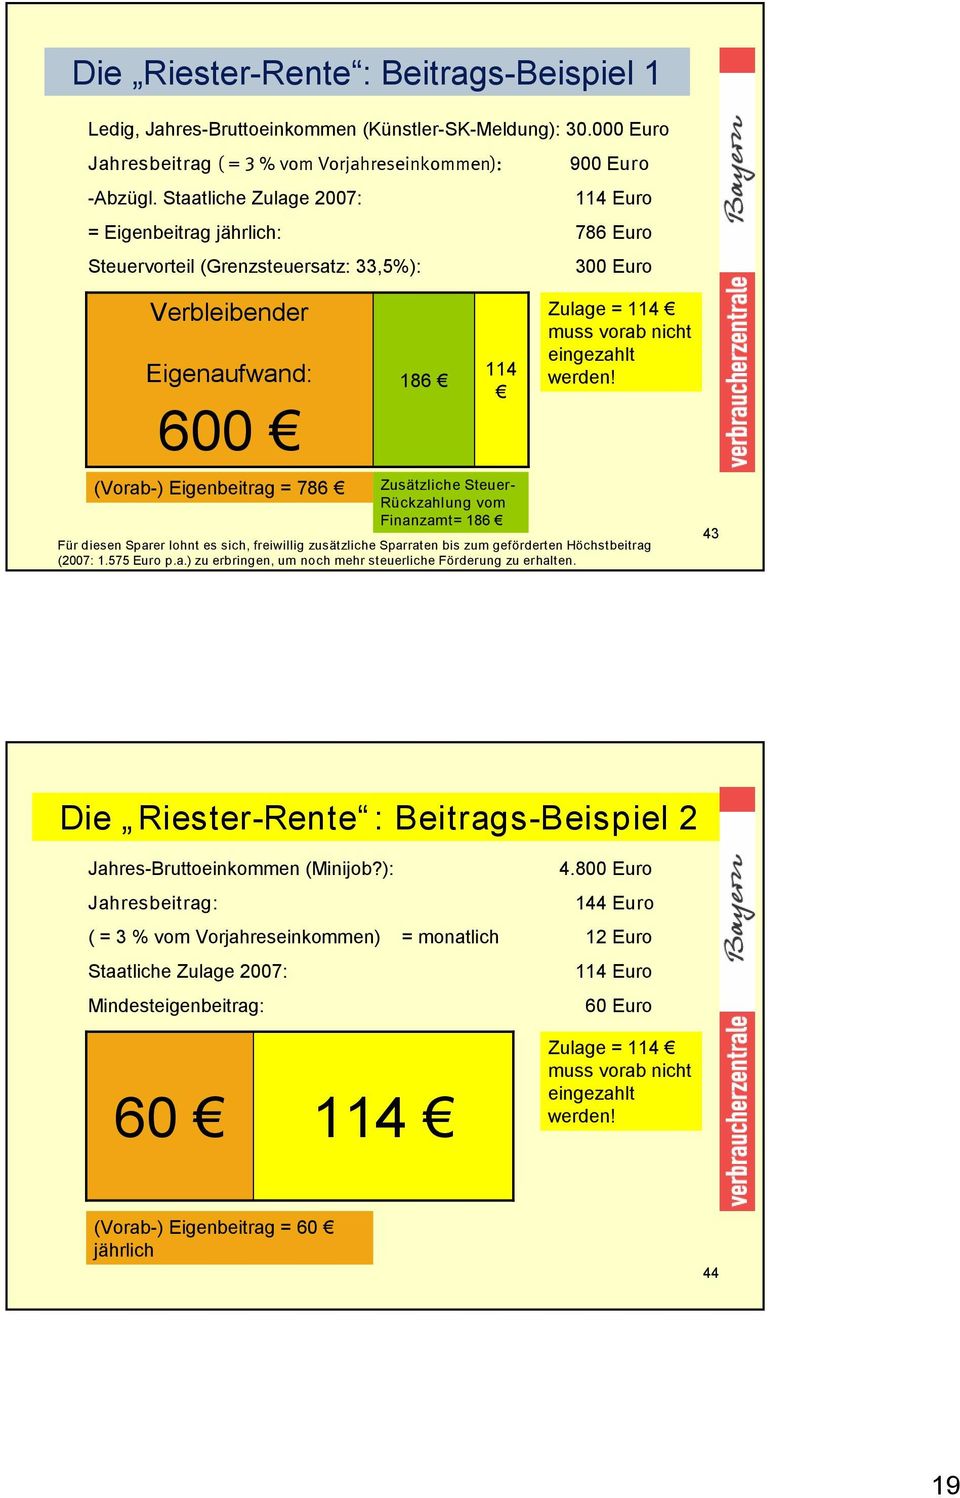 Steuervorteil (Grenzsteuersatz: 33,5%): 300 Euro Zulage = 114 muss vorab nicht eingezahlt werden!